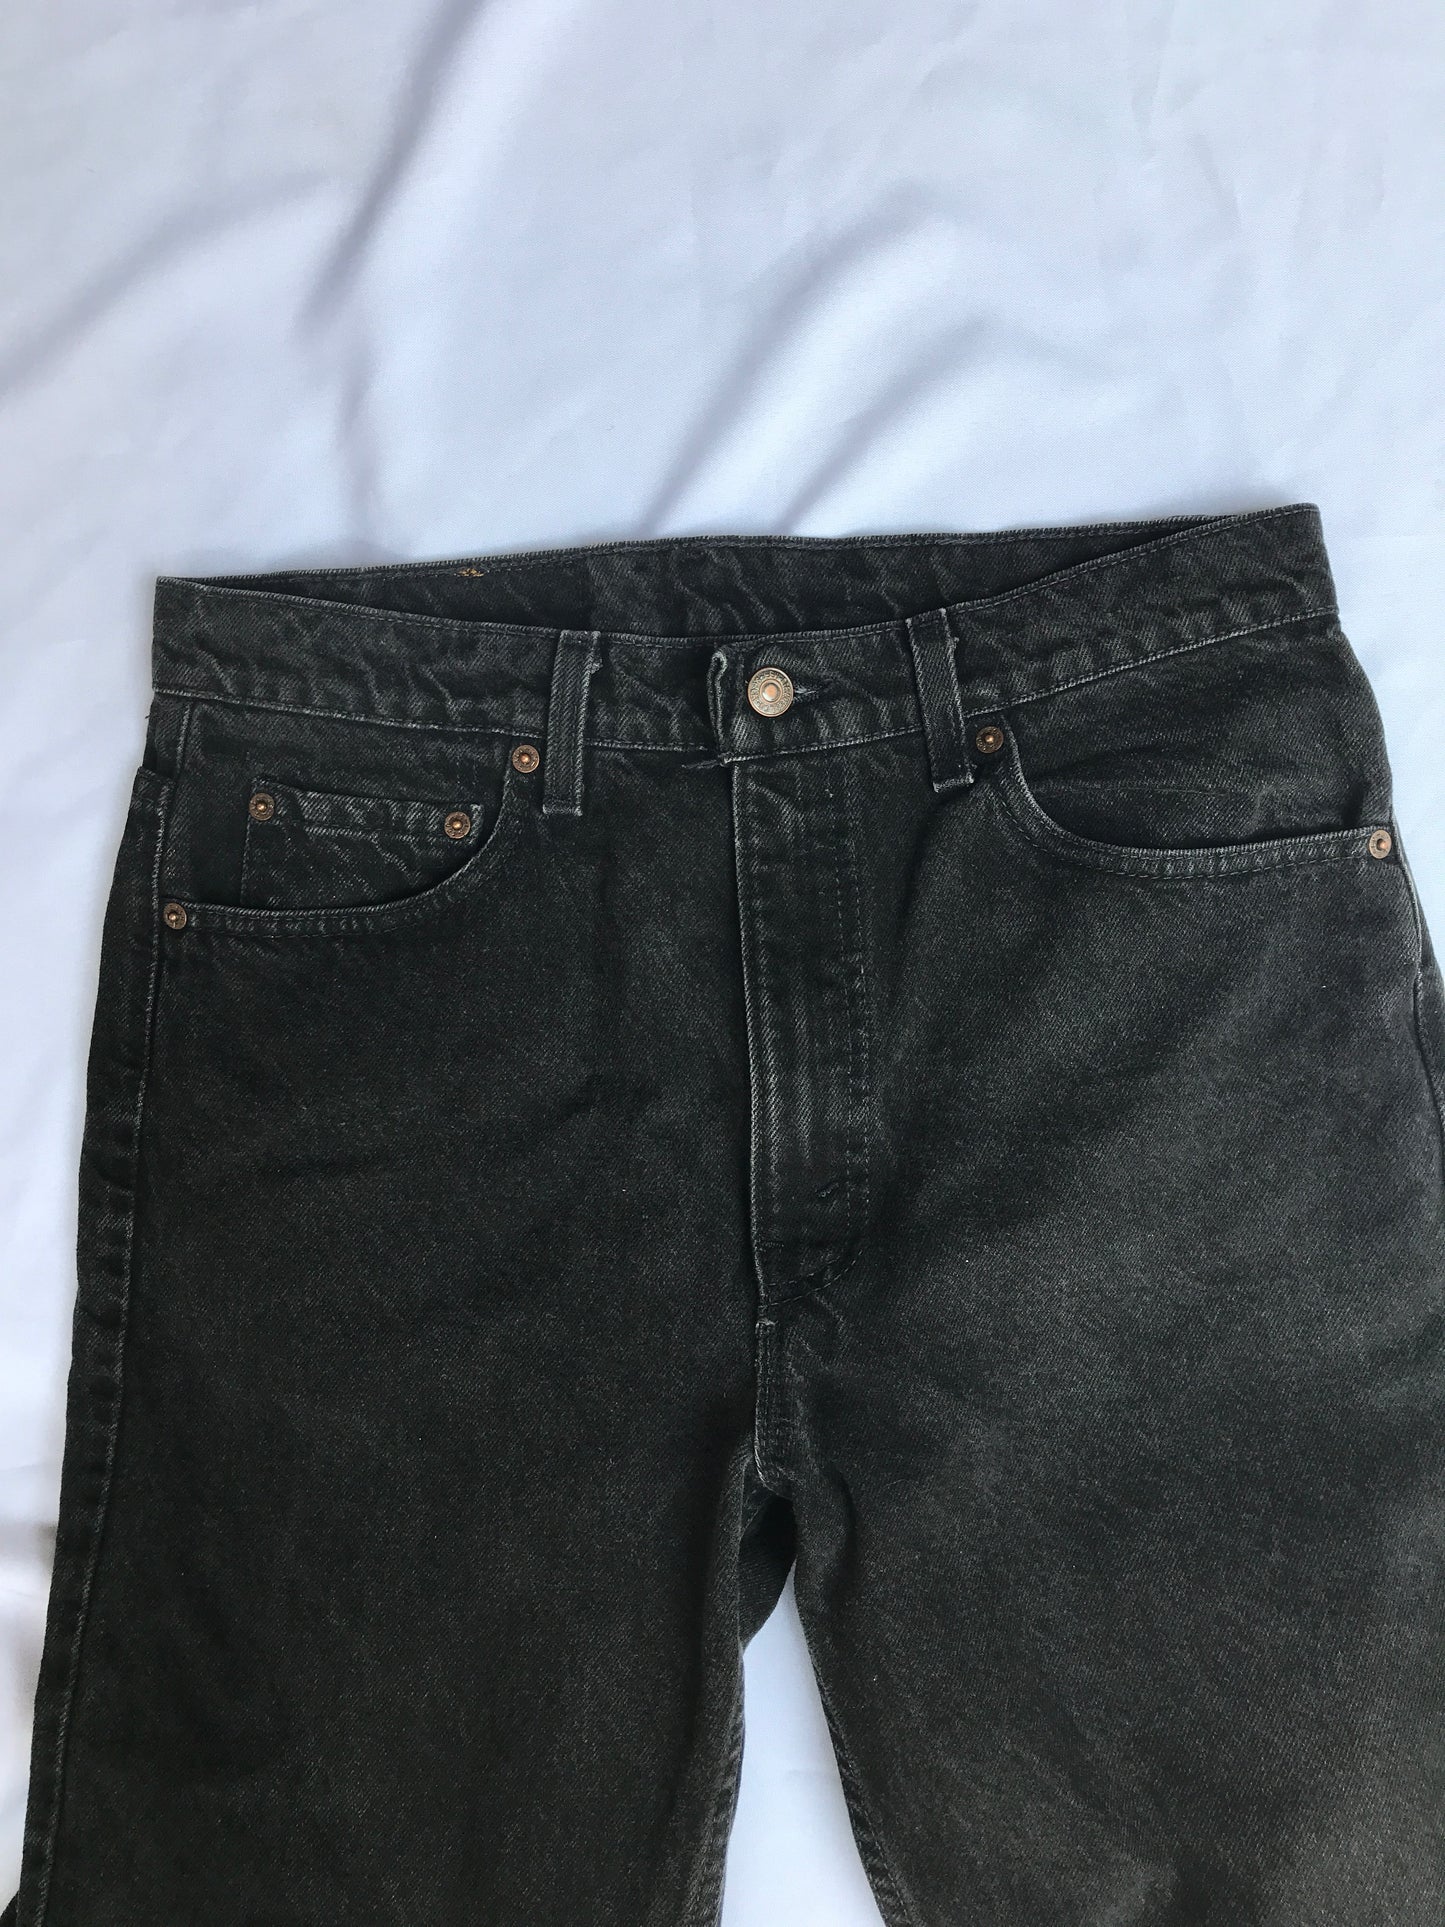 Levi's Black Vintage Jeans